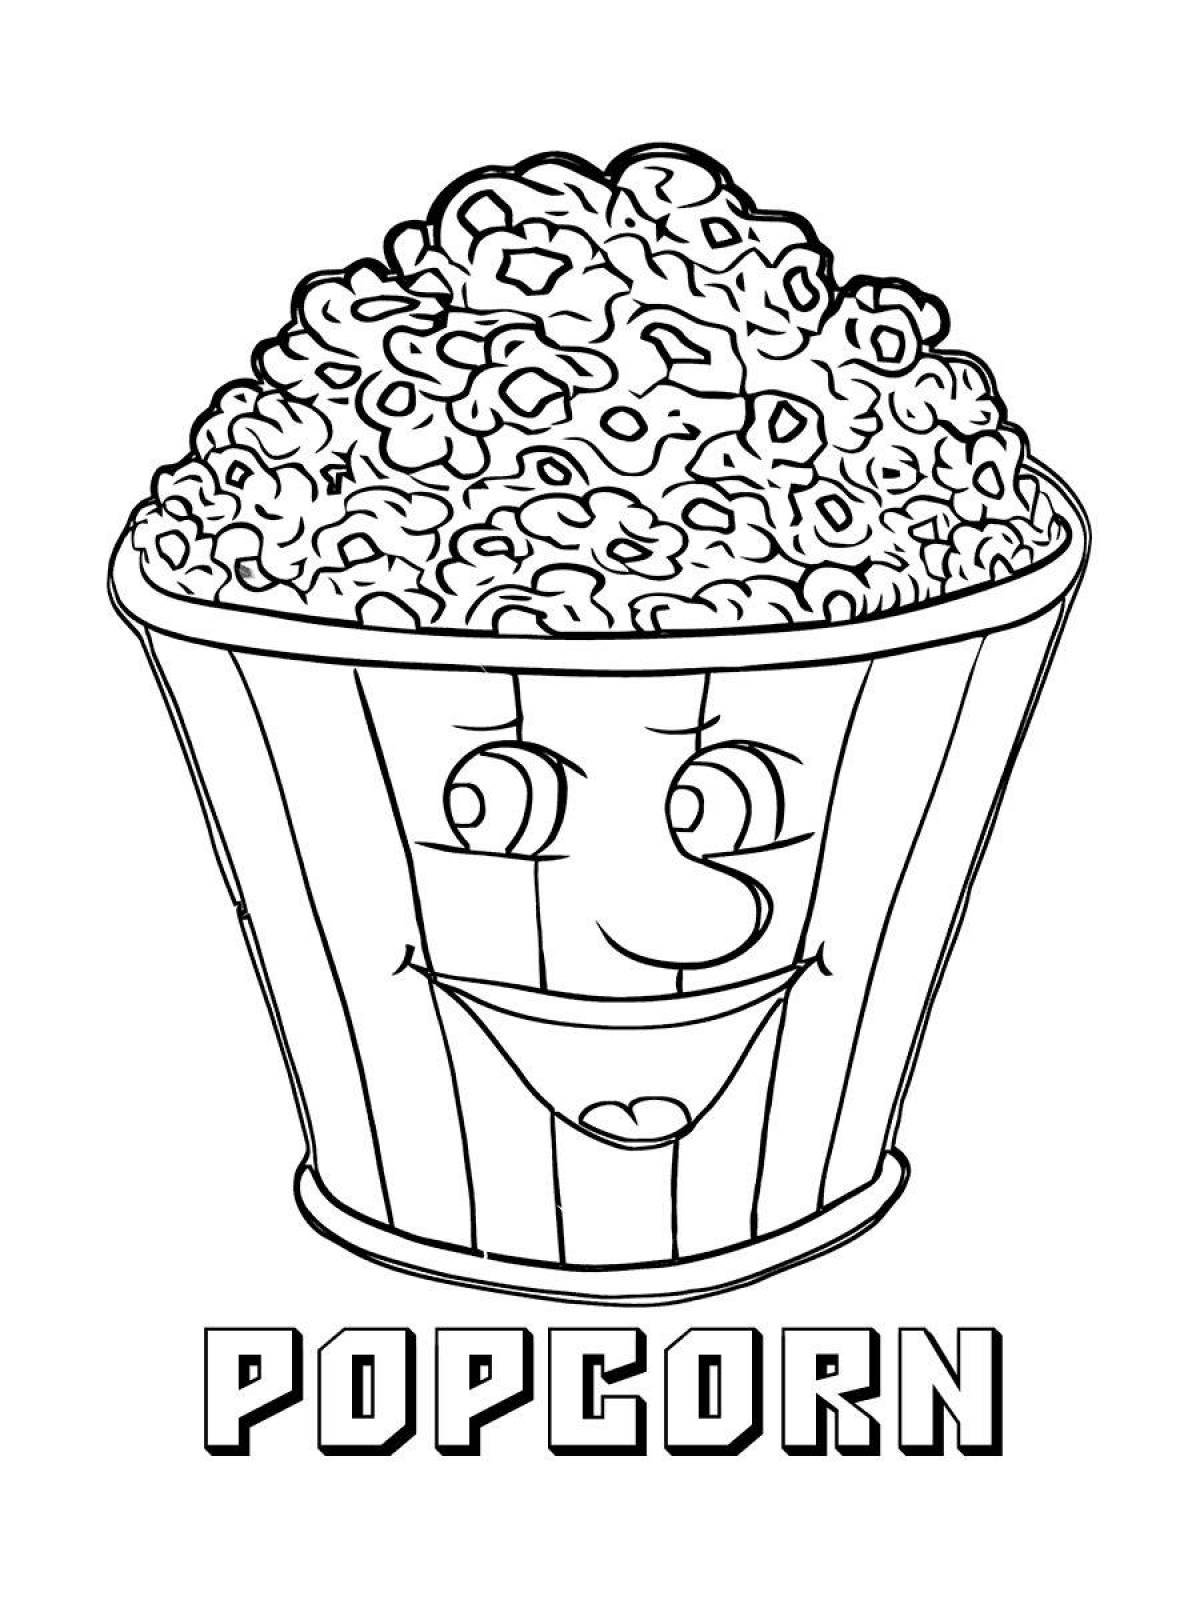 Happy popcorn coloring page